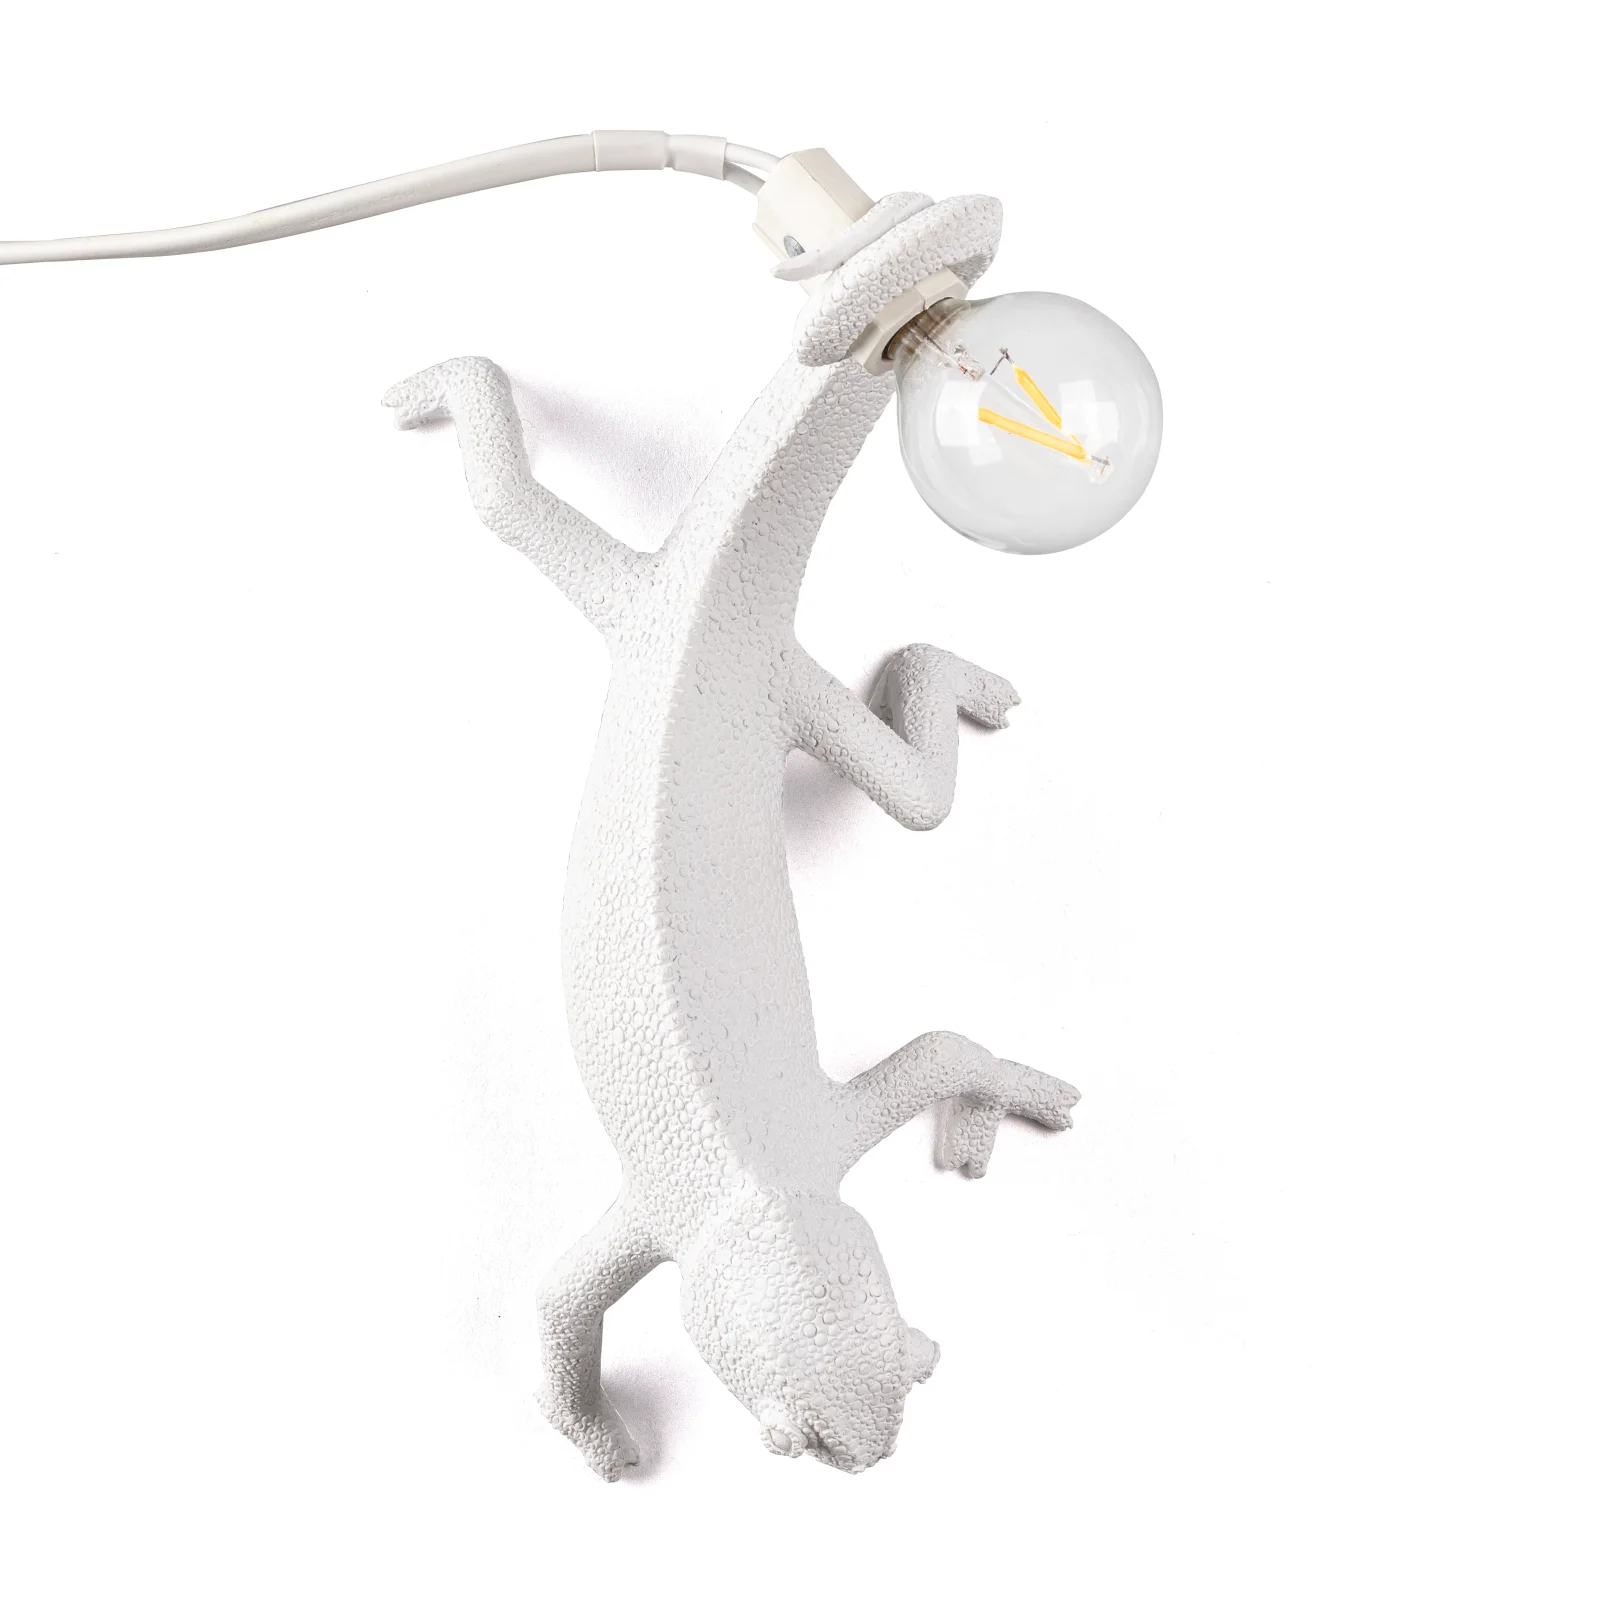 Seletti Chameleon Downwards Lamp - White Image 1